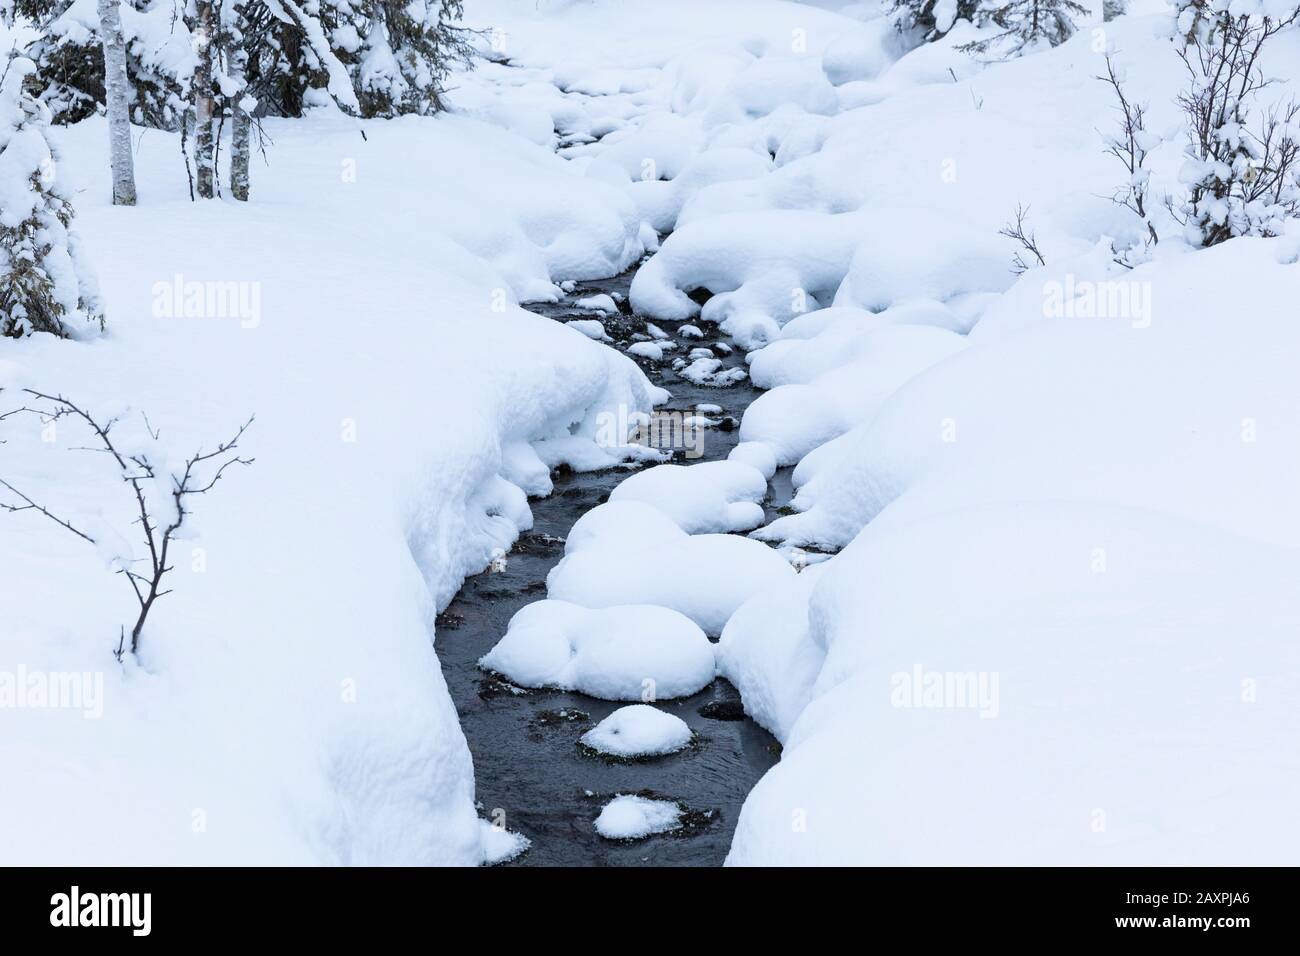 Finland, Lapland, Pallastunturi, winter, brook, snow Stock Photo